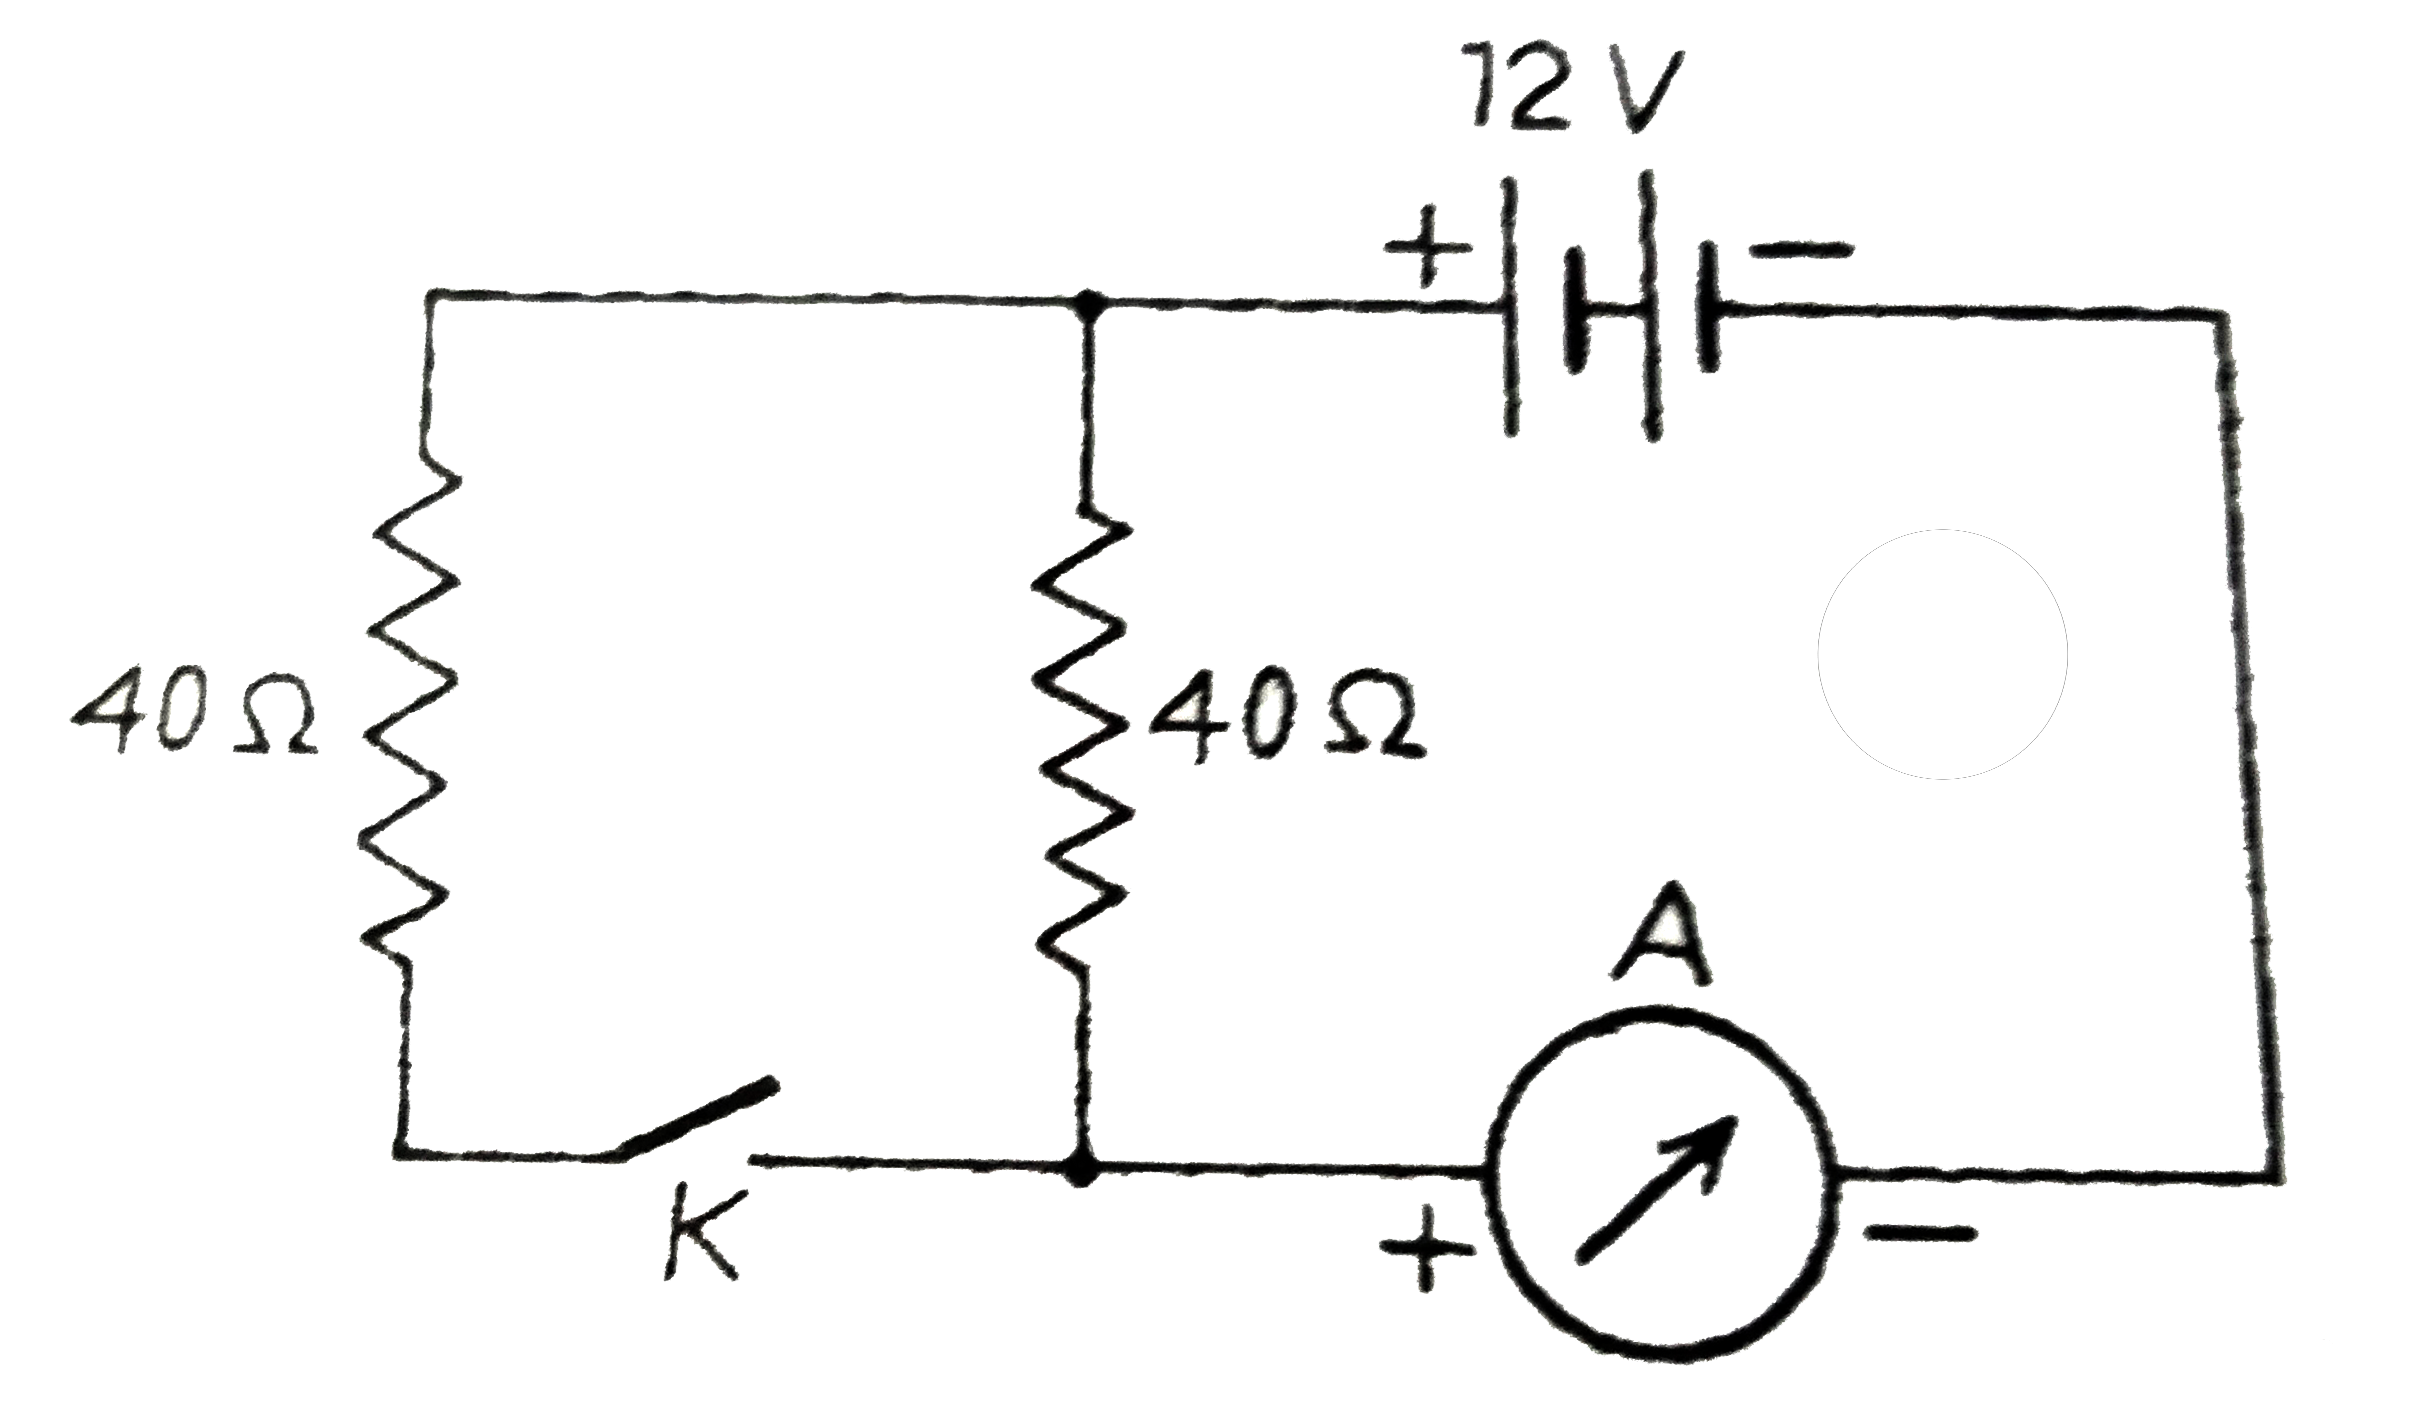 दिए  गये चित्र में दिखाया  गए परिपथ  में लगी बैटरी का विधुत  वाहक बल 12  वोल्ट  तथा आंतरिक प्रतिरोध  नगण्य है । अमीटर  A  के पाठ्यांक की गणना  कीजिए  जबकि कुंजी K  (i) खुली हो (ii)  बंद  हो ।